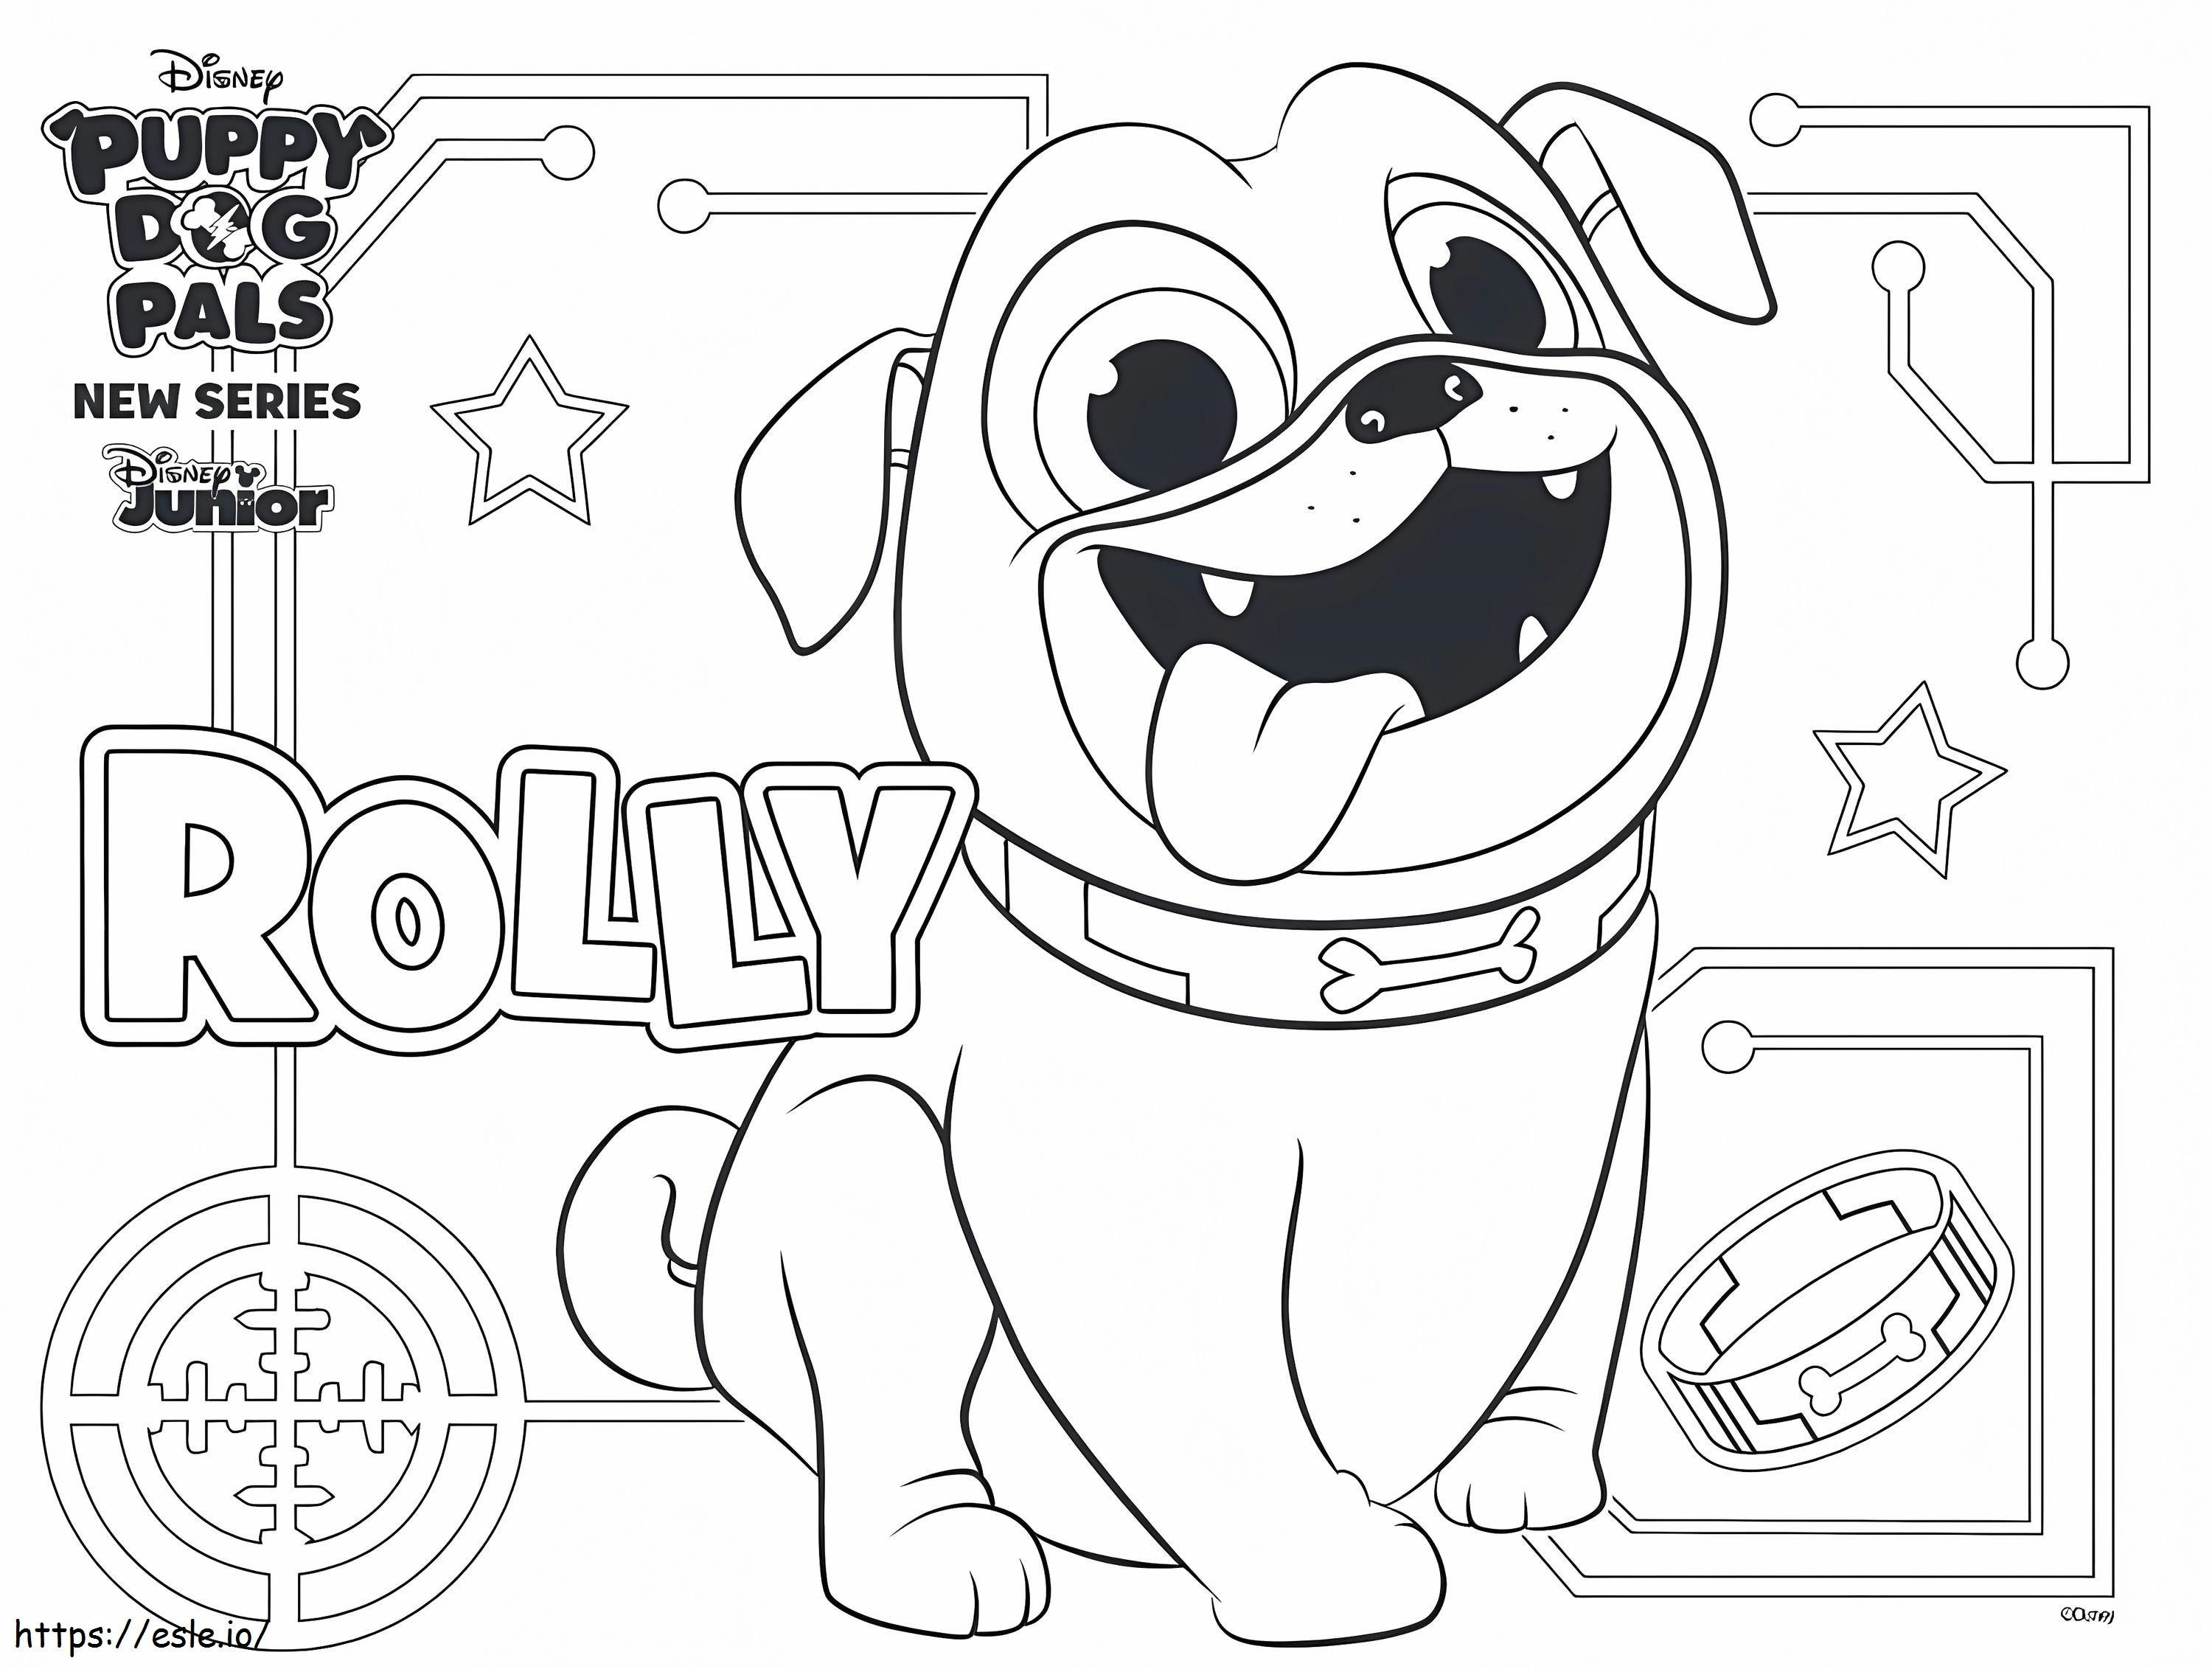 Pagina da colorare divertente di Rolly da colorare